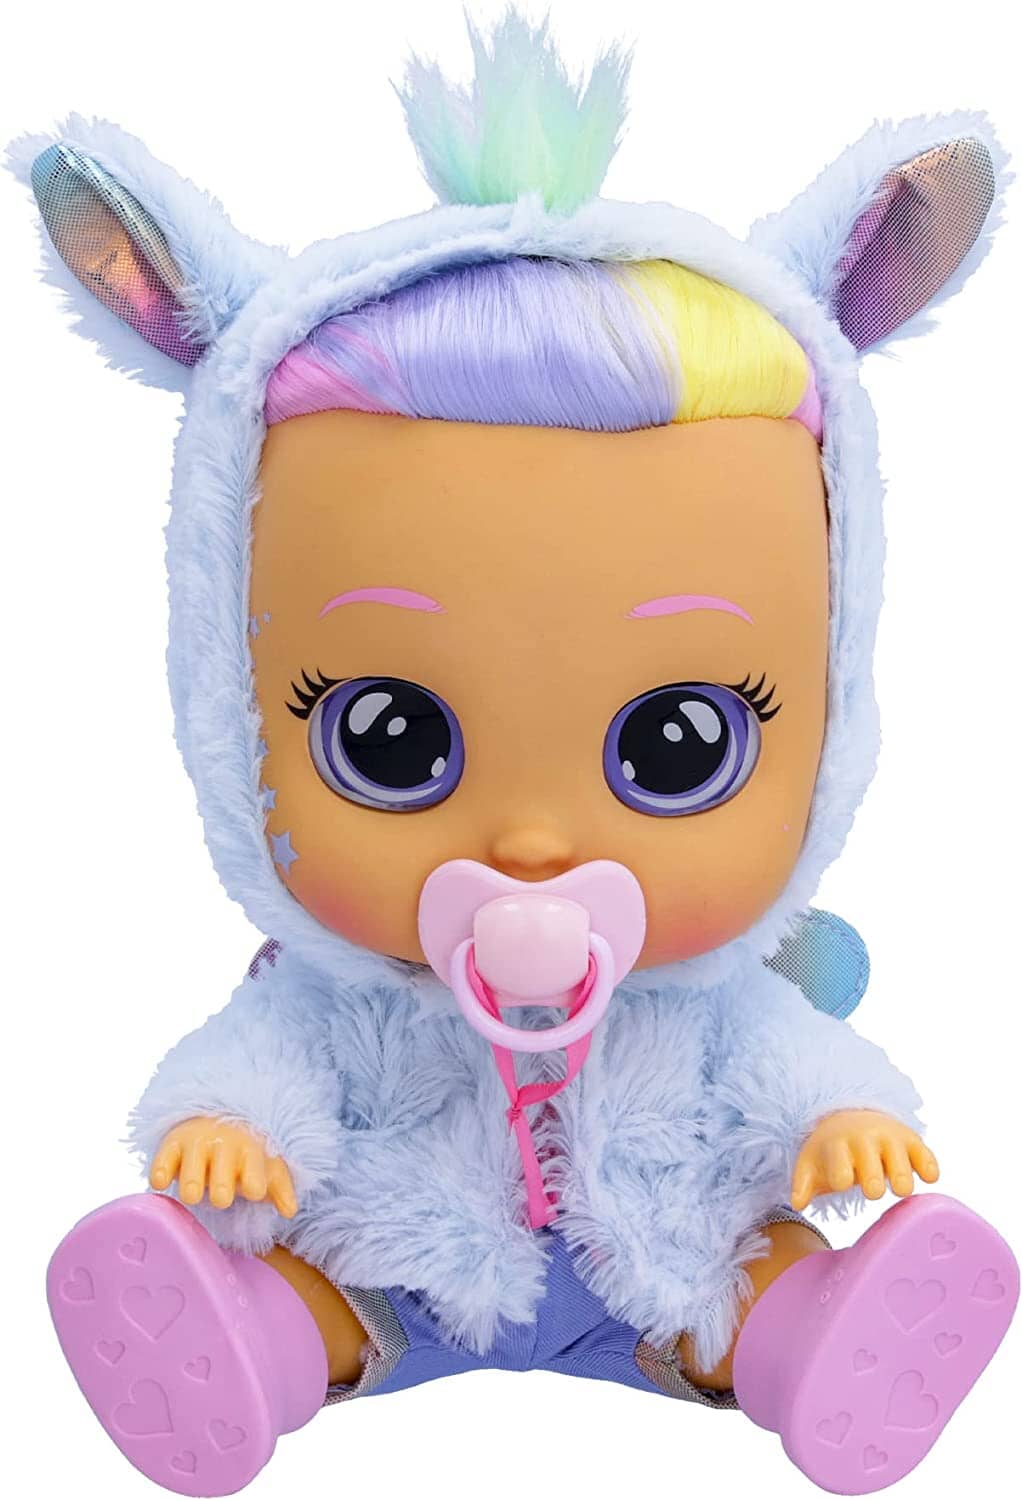 Cry Babies Dressy Fantasy Jenna IMC TOYS toysvaldichiana.it 